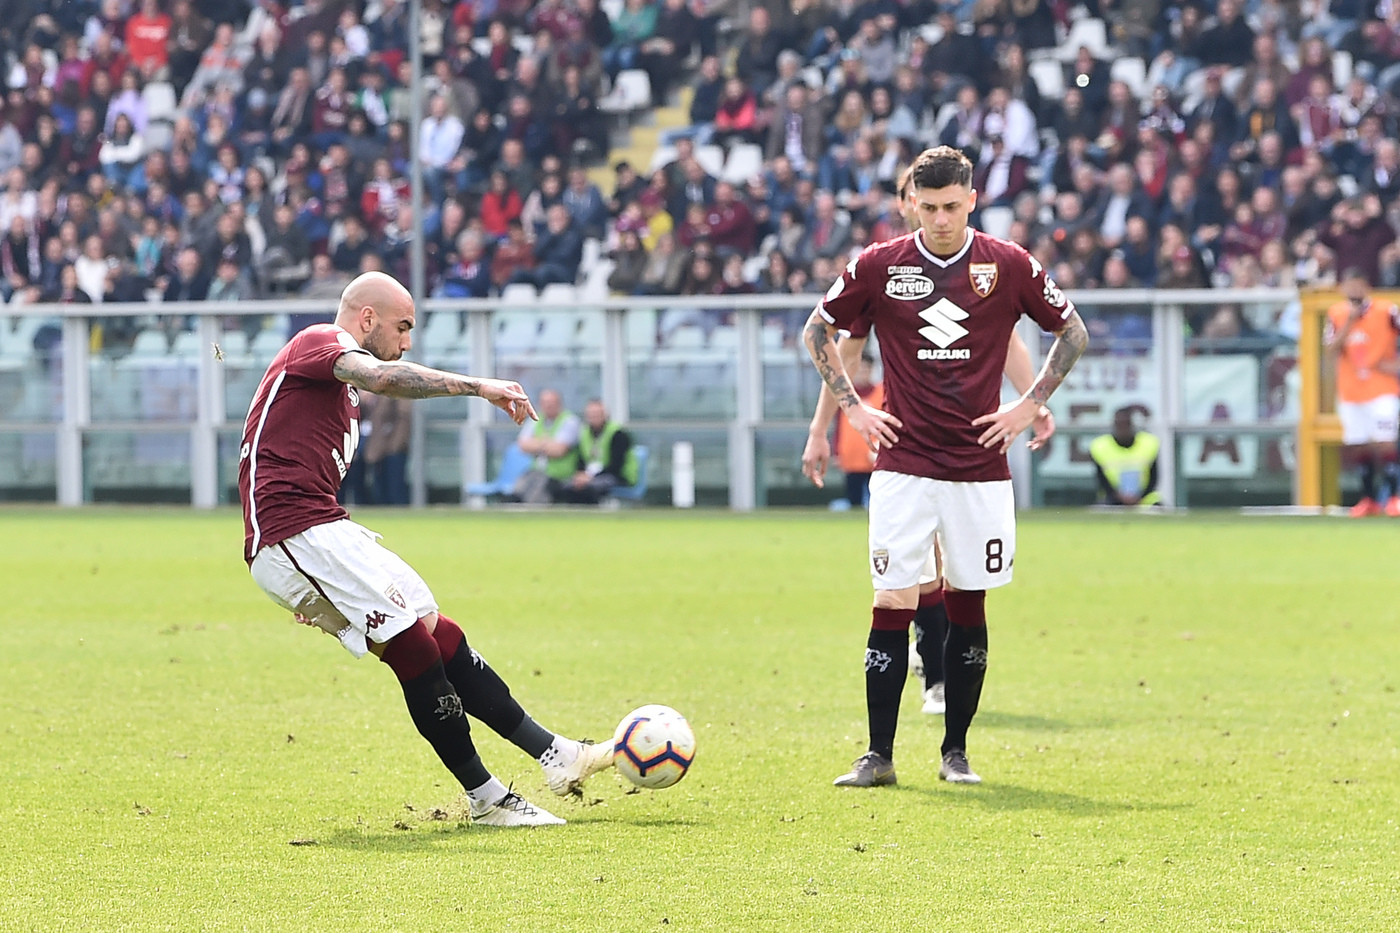 Serie A, Torino-Chievo 3-0 | Il fotoracconto